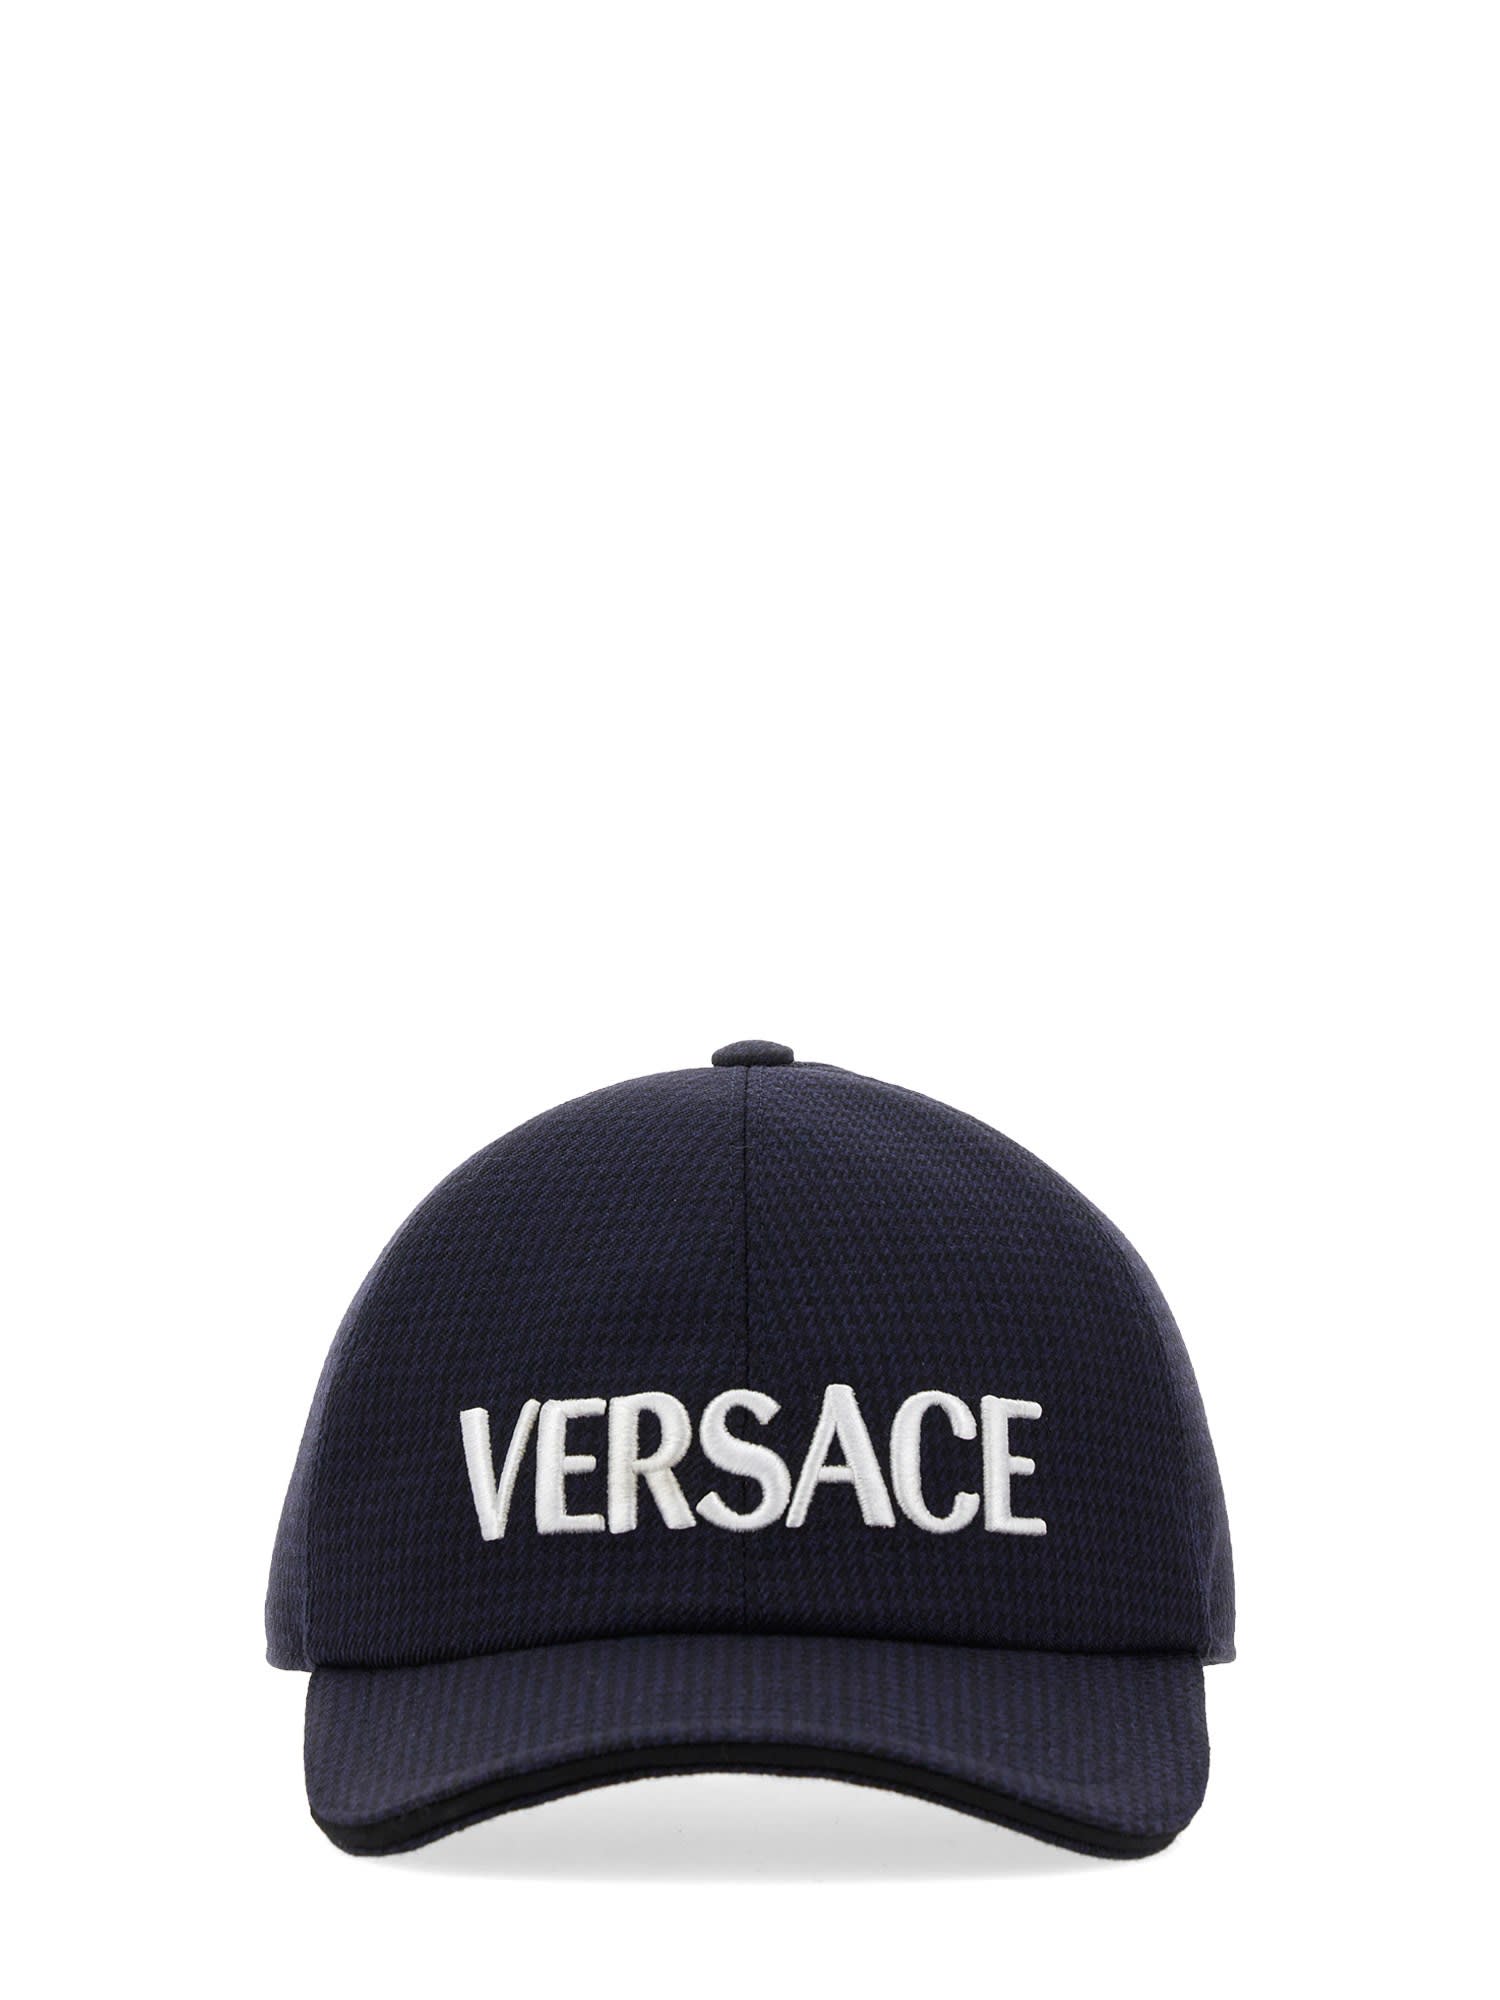 VERSACE BASEBALL CAP